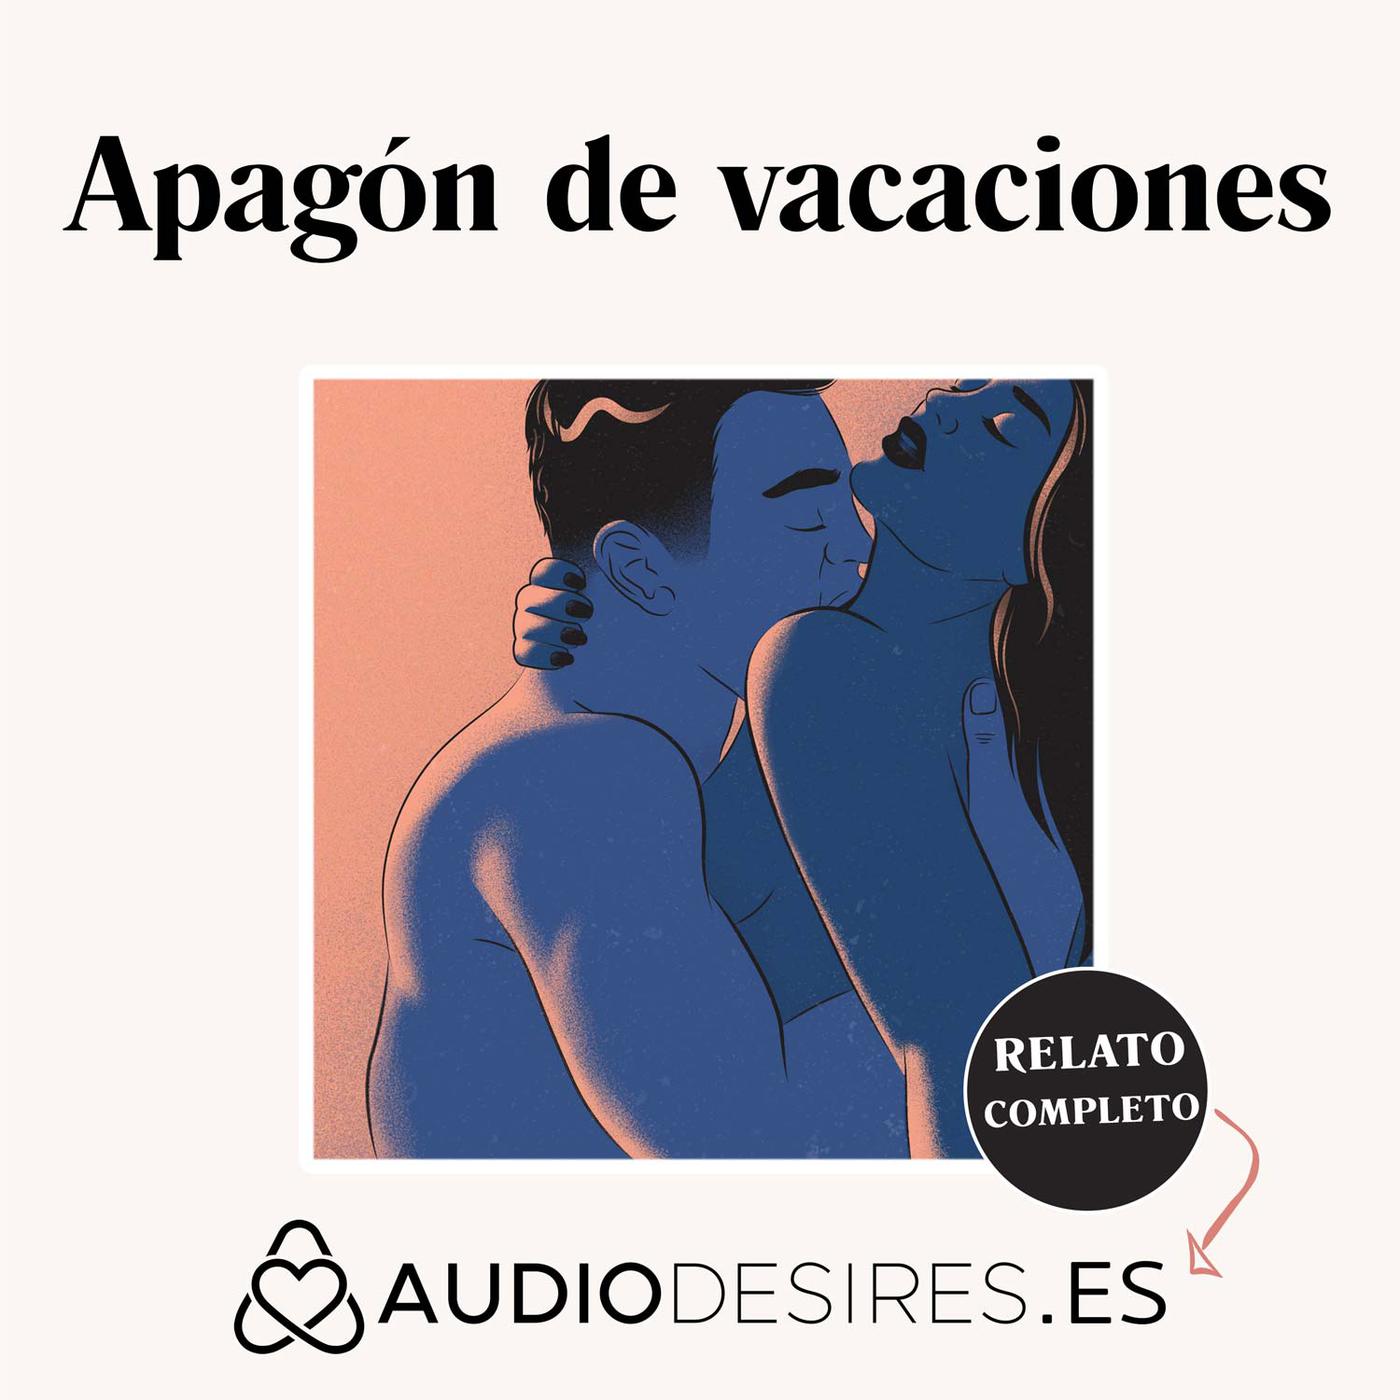 Best of Audio relatos de sexo